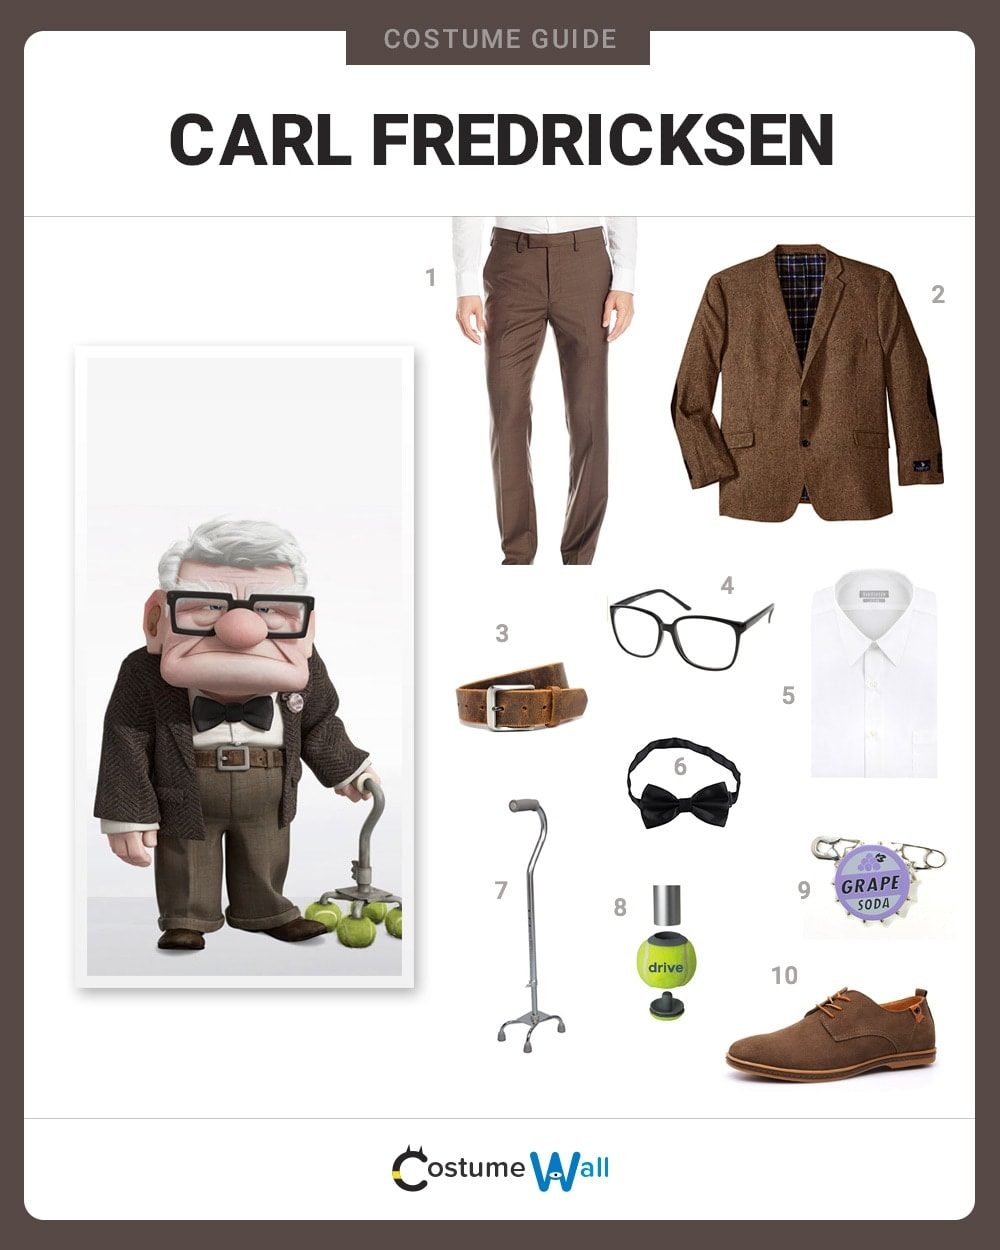 Carl Fredricksen Costume Guide